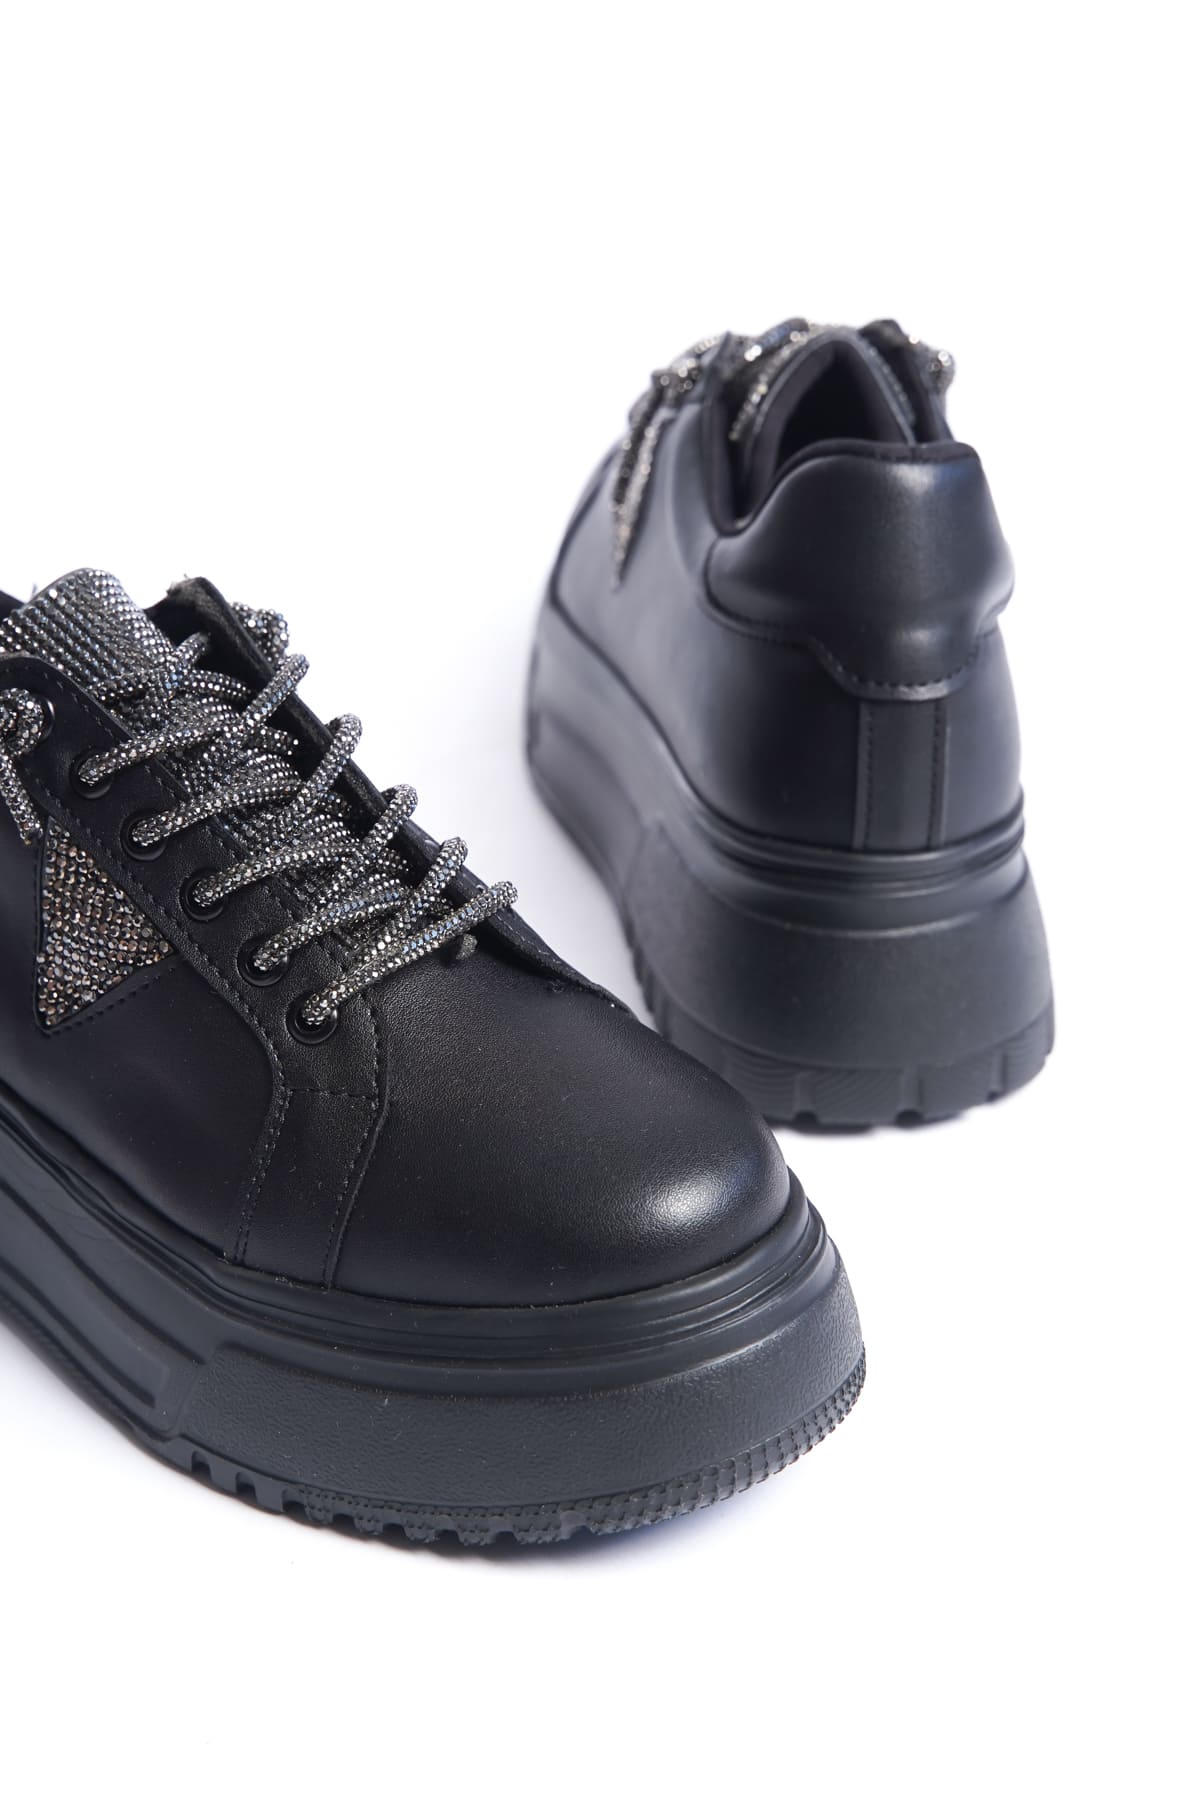 AYAS Bağcıklı Ortopedik Taban Taşlı Kadın Sneaker Ayakkabı  Siyah